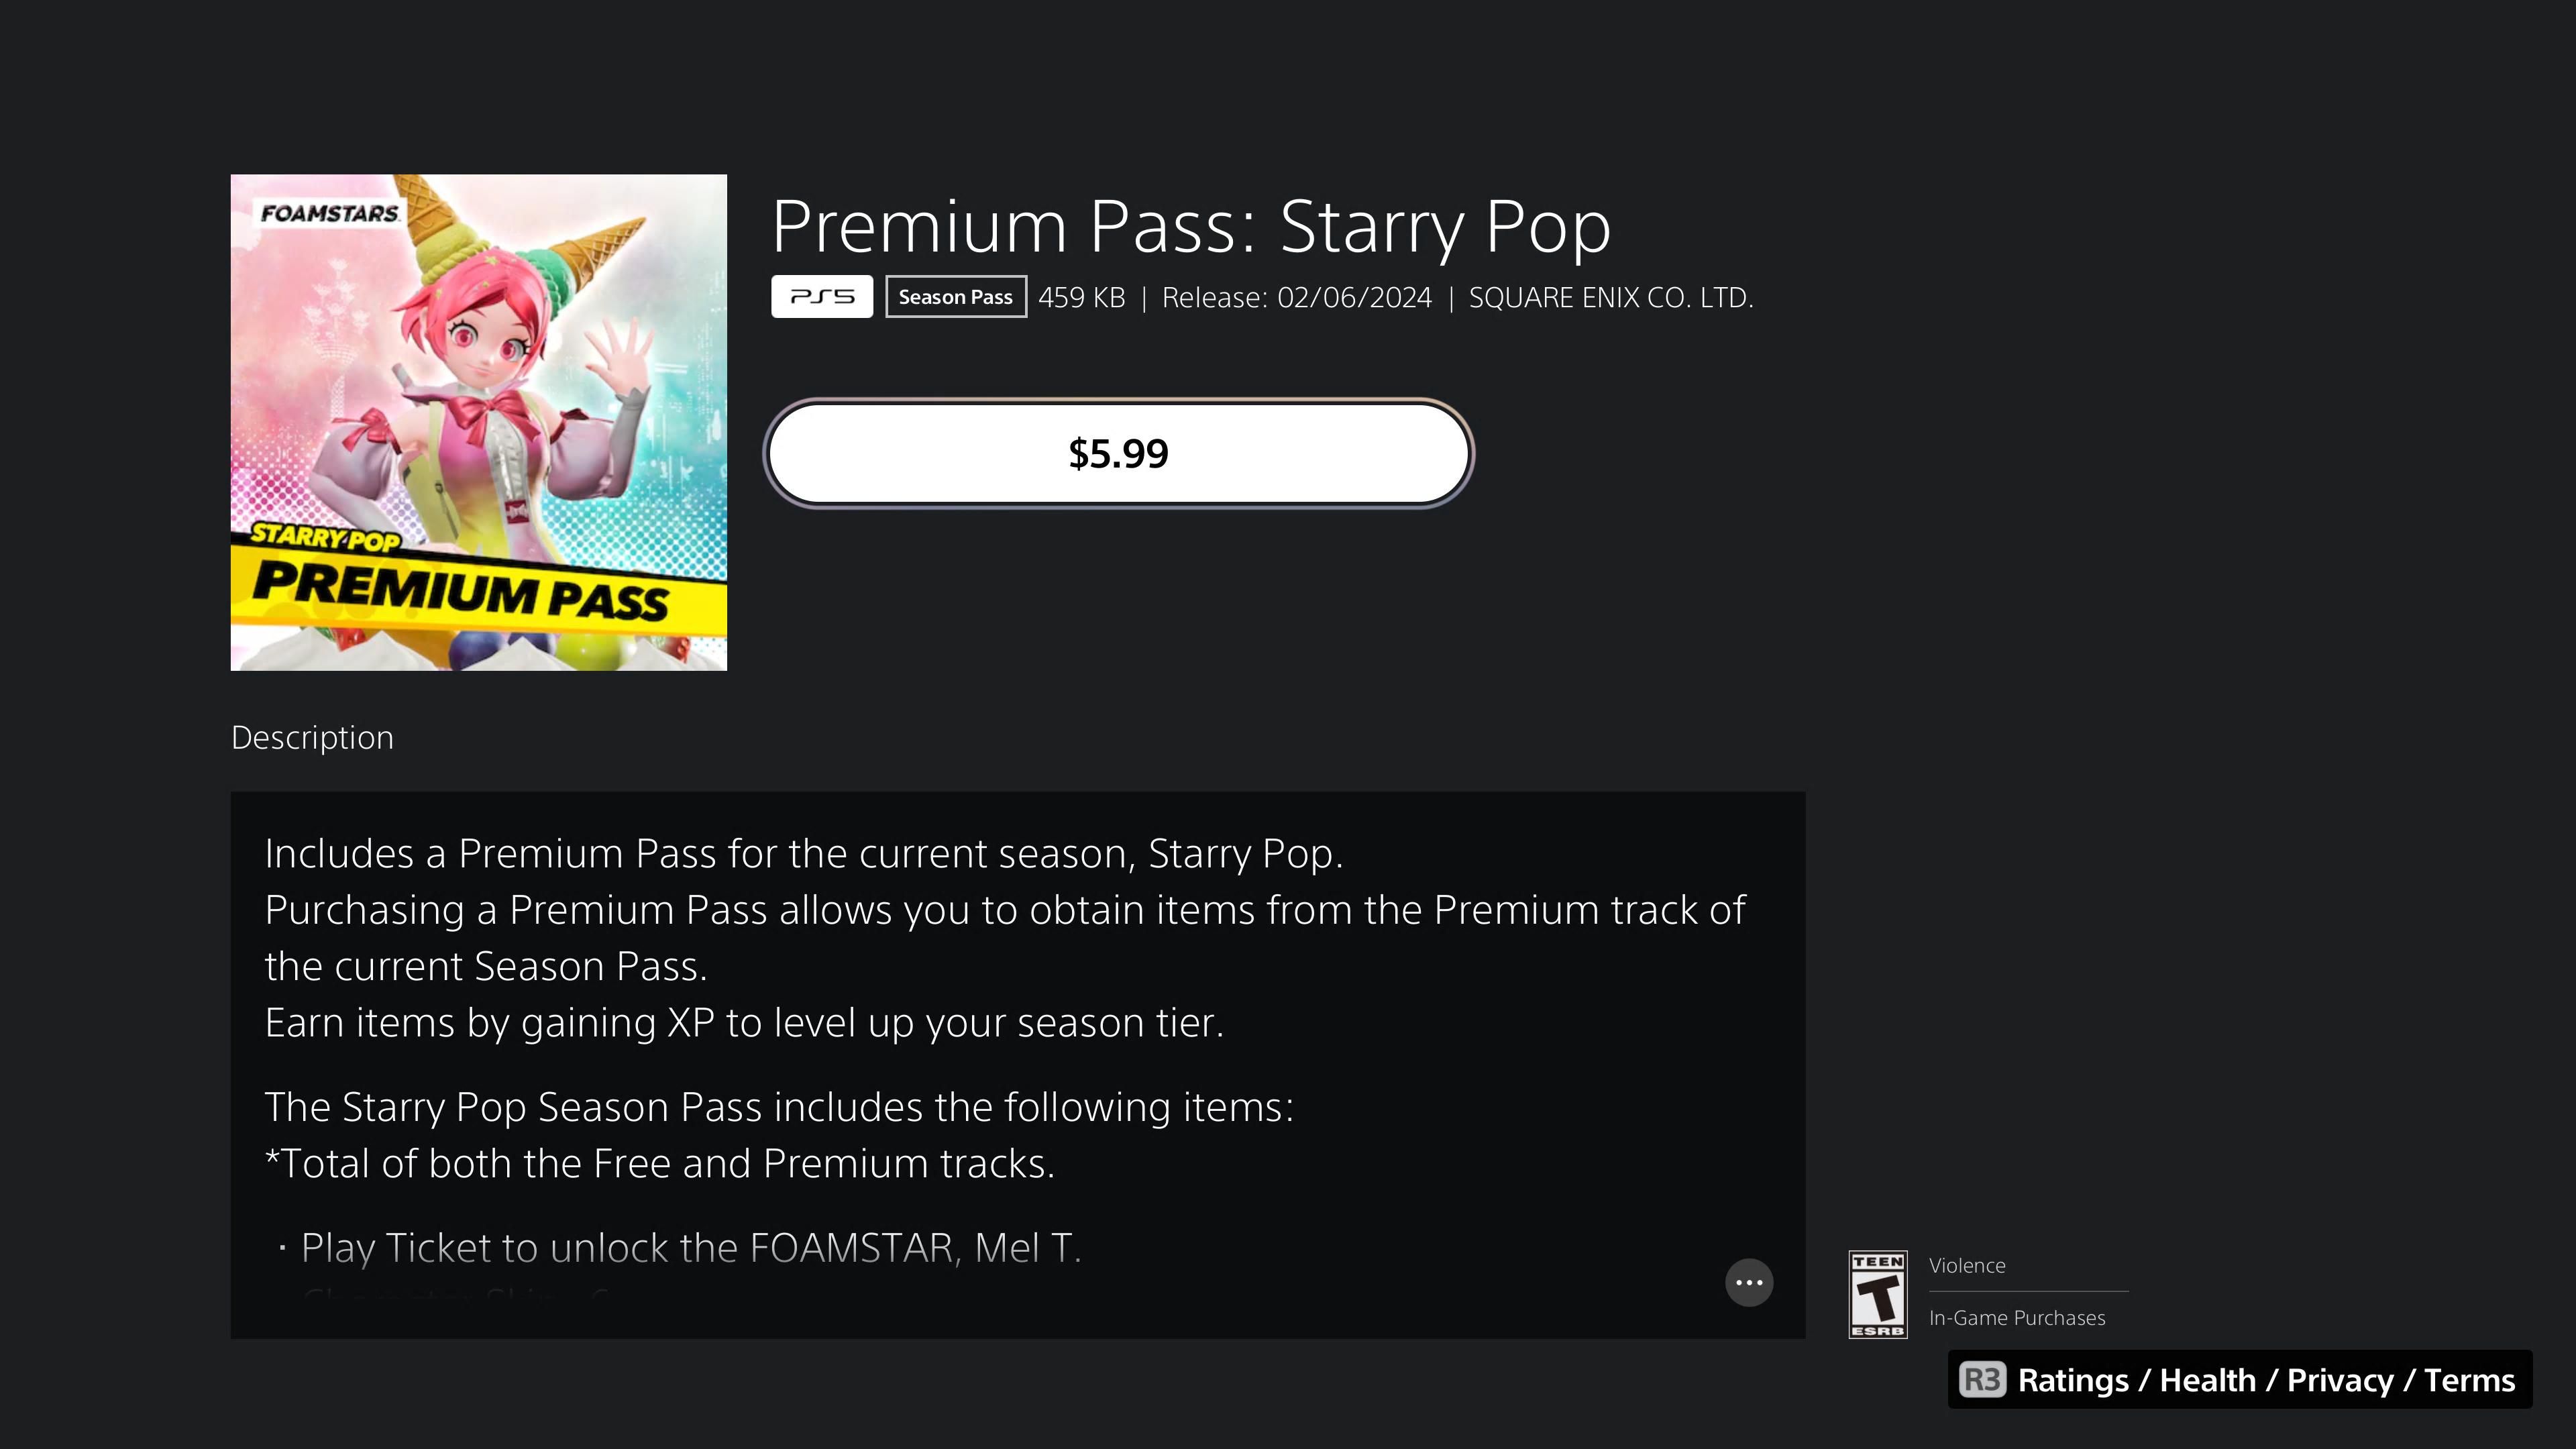 Le Passe Premium : Starry Pop, montrant qu'il coûte $5.99 dans Foamstars.